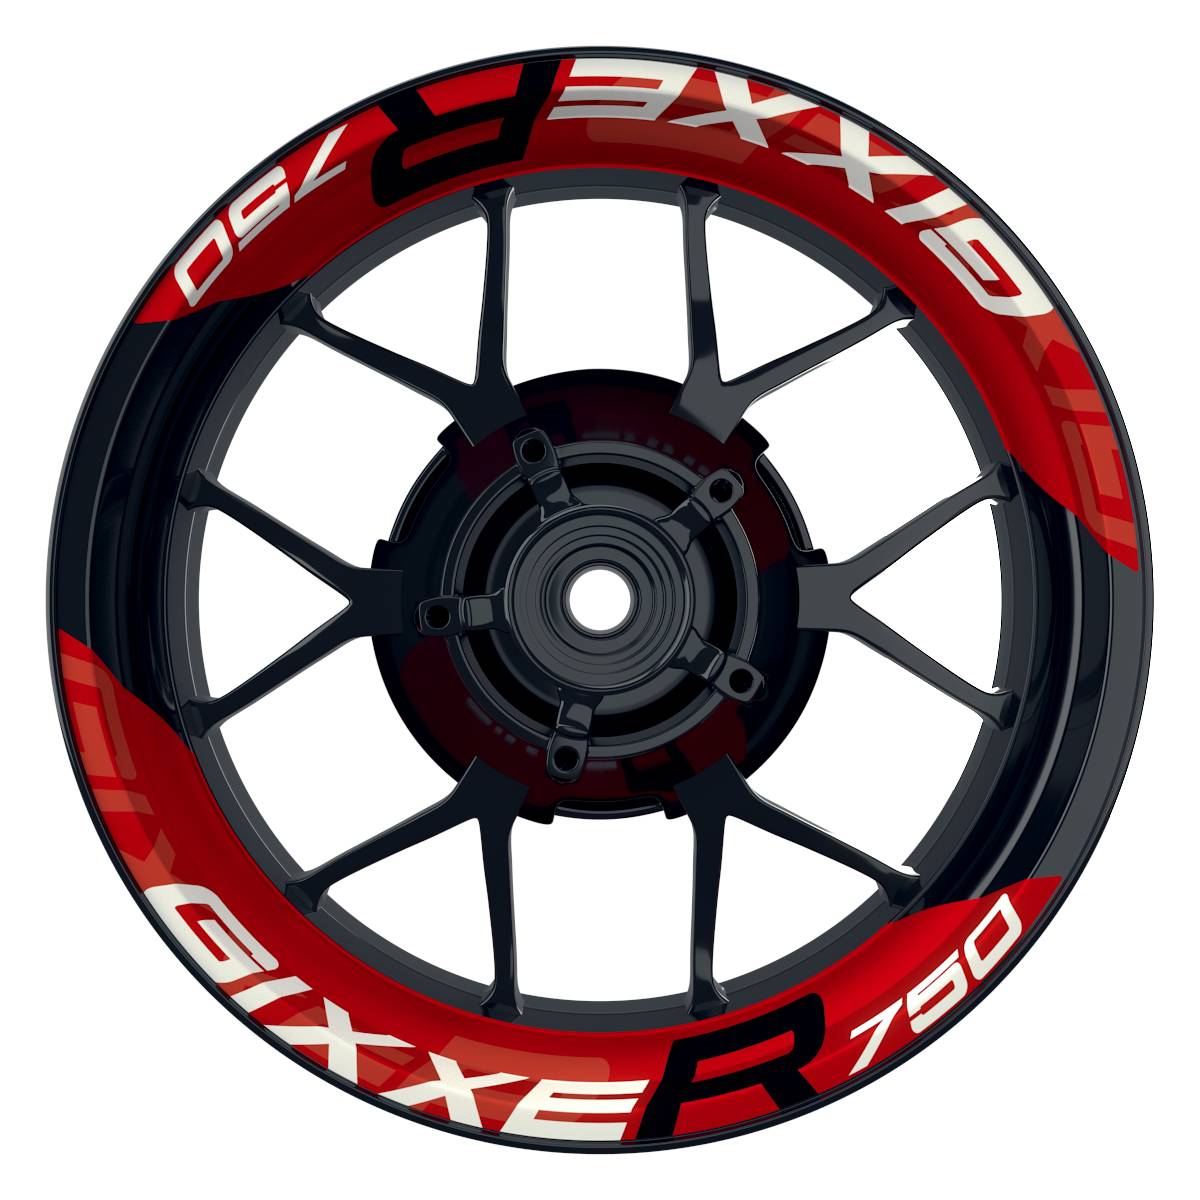 Wheelsticker Felgenaufkleber GIXXER750 einfarbig V2 rot Frontansicht